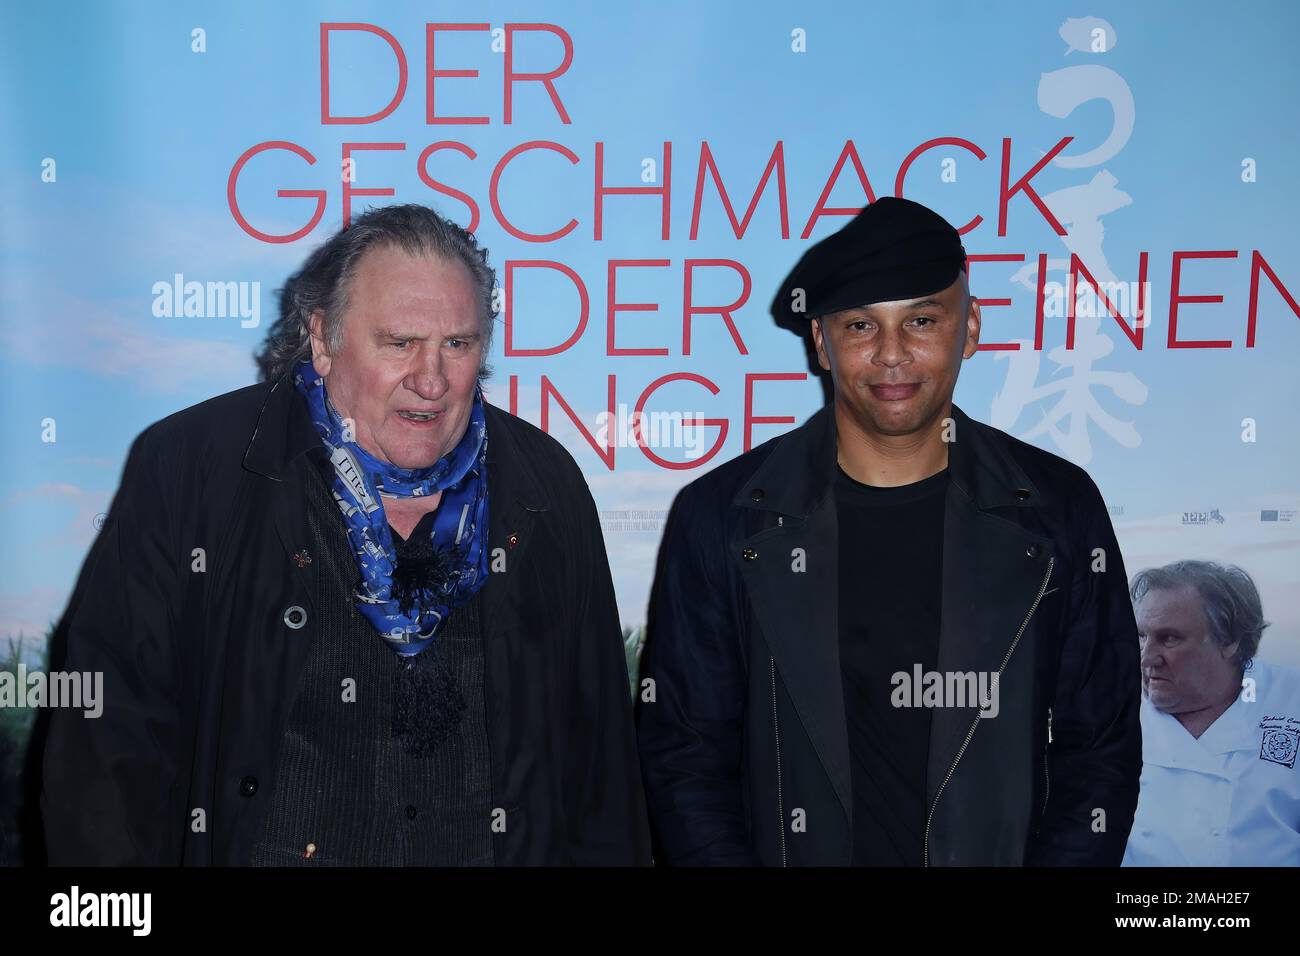 DEU, Deutschland, Berlino, 12,1.23, Cinema Parigi, Filmpremiere Der Geschmack der kleinen Dinge (OT: UMami) , Gérard Depardieu mit Regisseur Slony sow Foto Stock